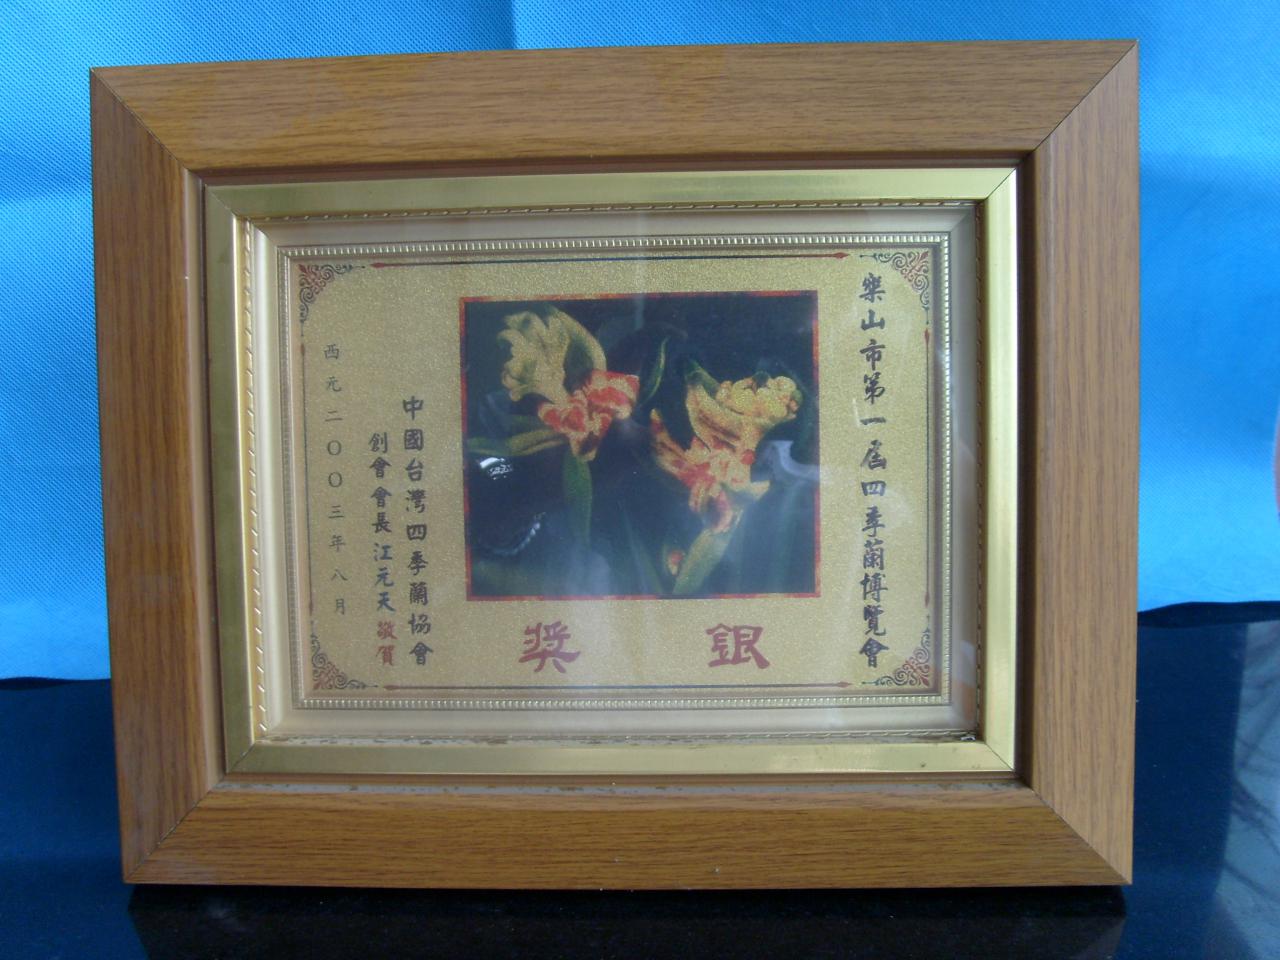 2003年乐山市第一届四季兰博览会-银奖